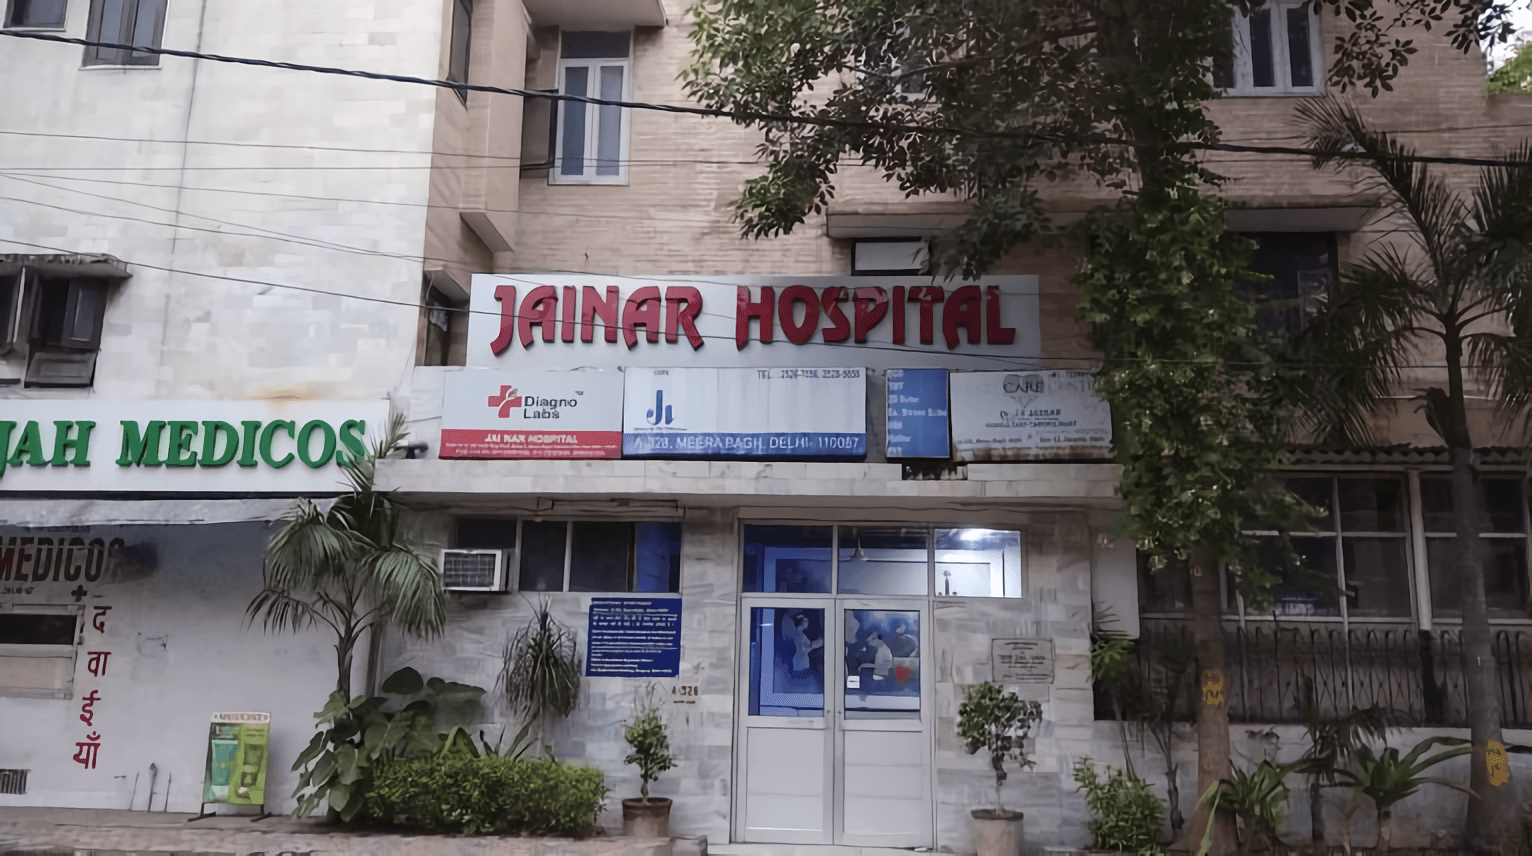 Jainar Hospital